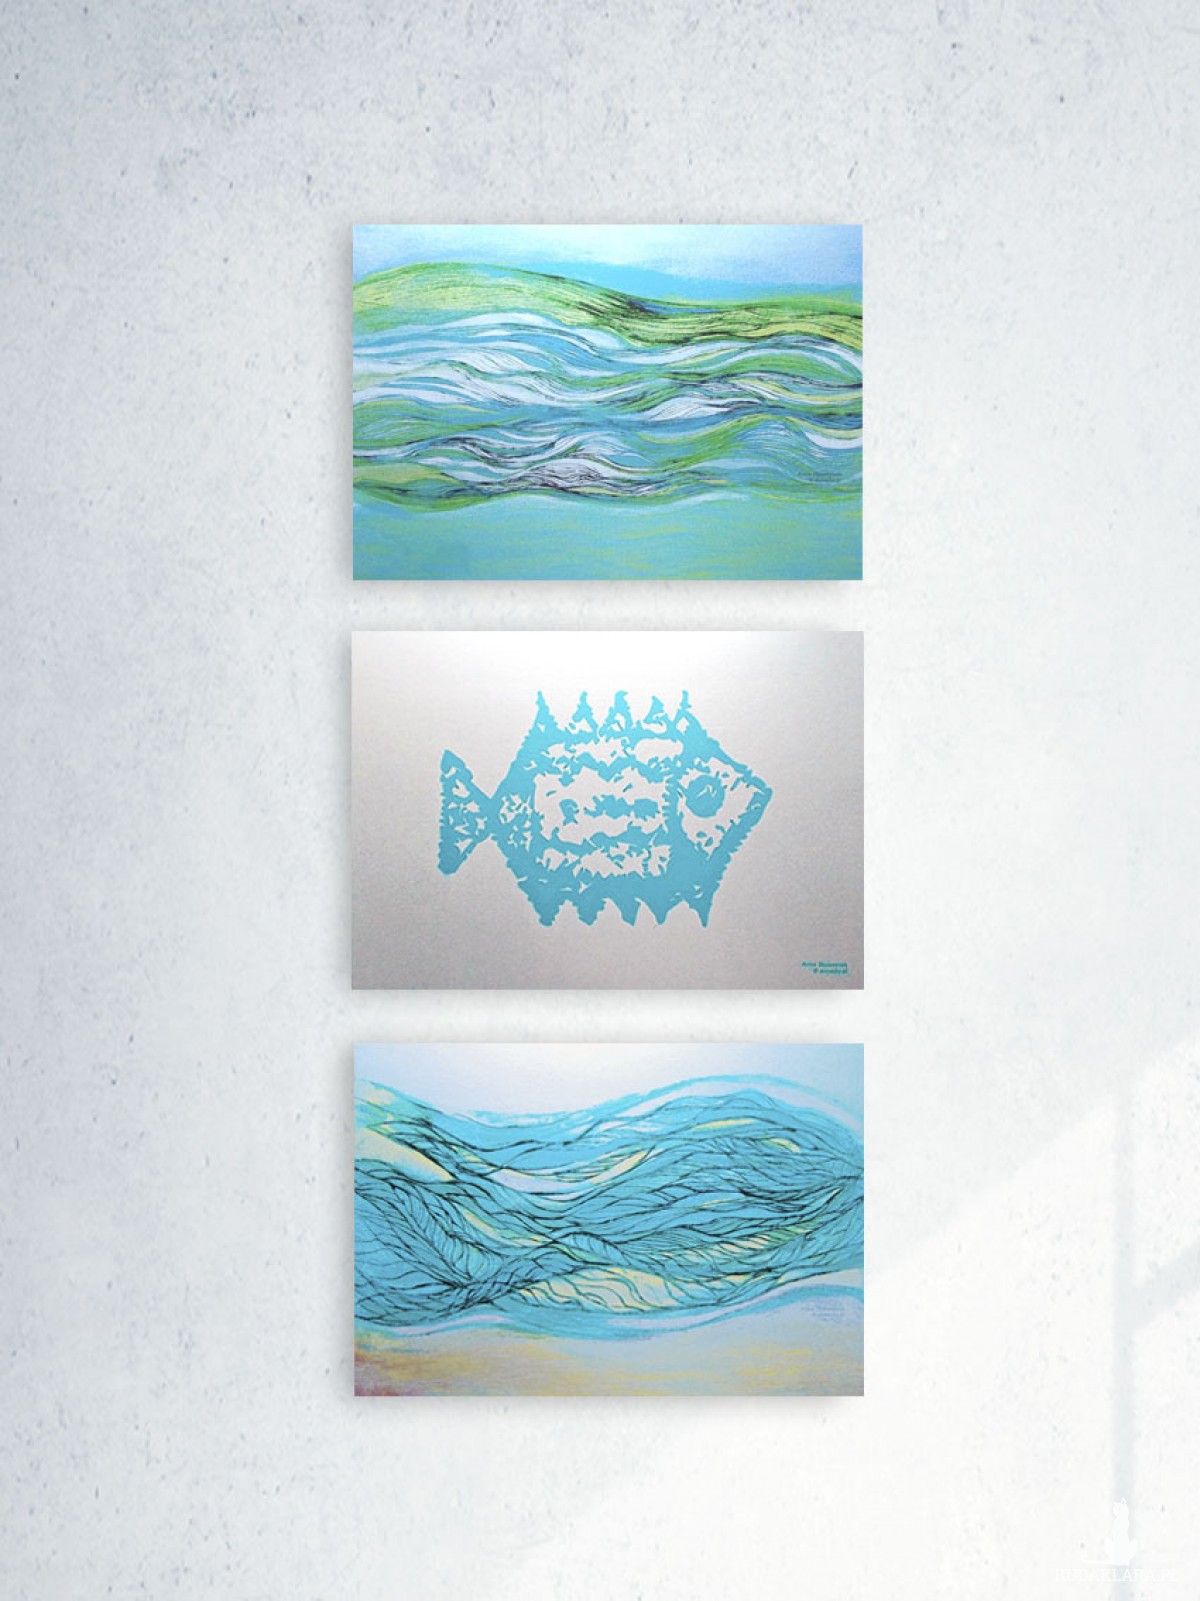 morze obrazek A4, mosrski plakat do domu, plakat z morzem, nowoczesna grafika 21x30, srebrno turkusowy plakat na ścianę, żeglarski obrazek A4, marynistyczna dekoracja